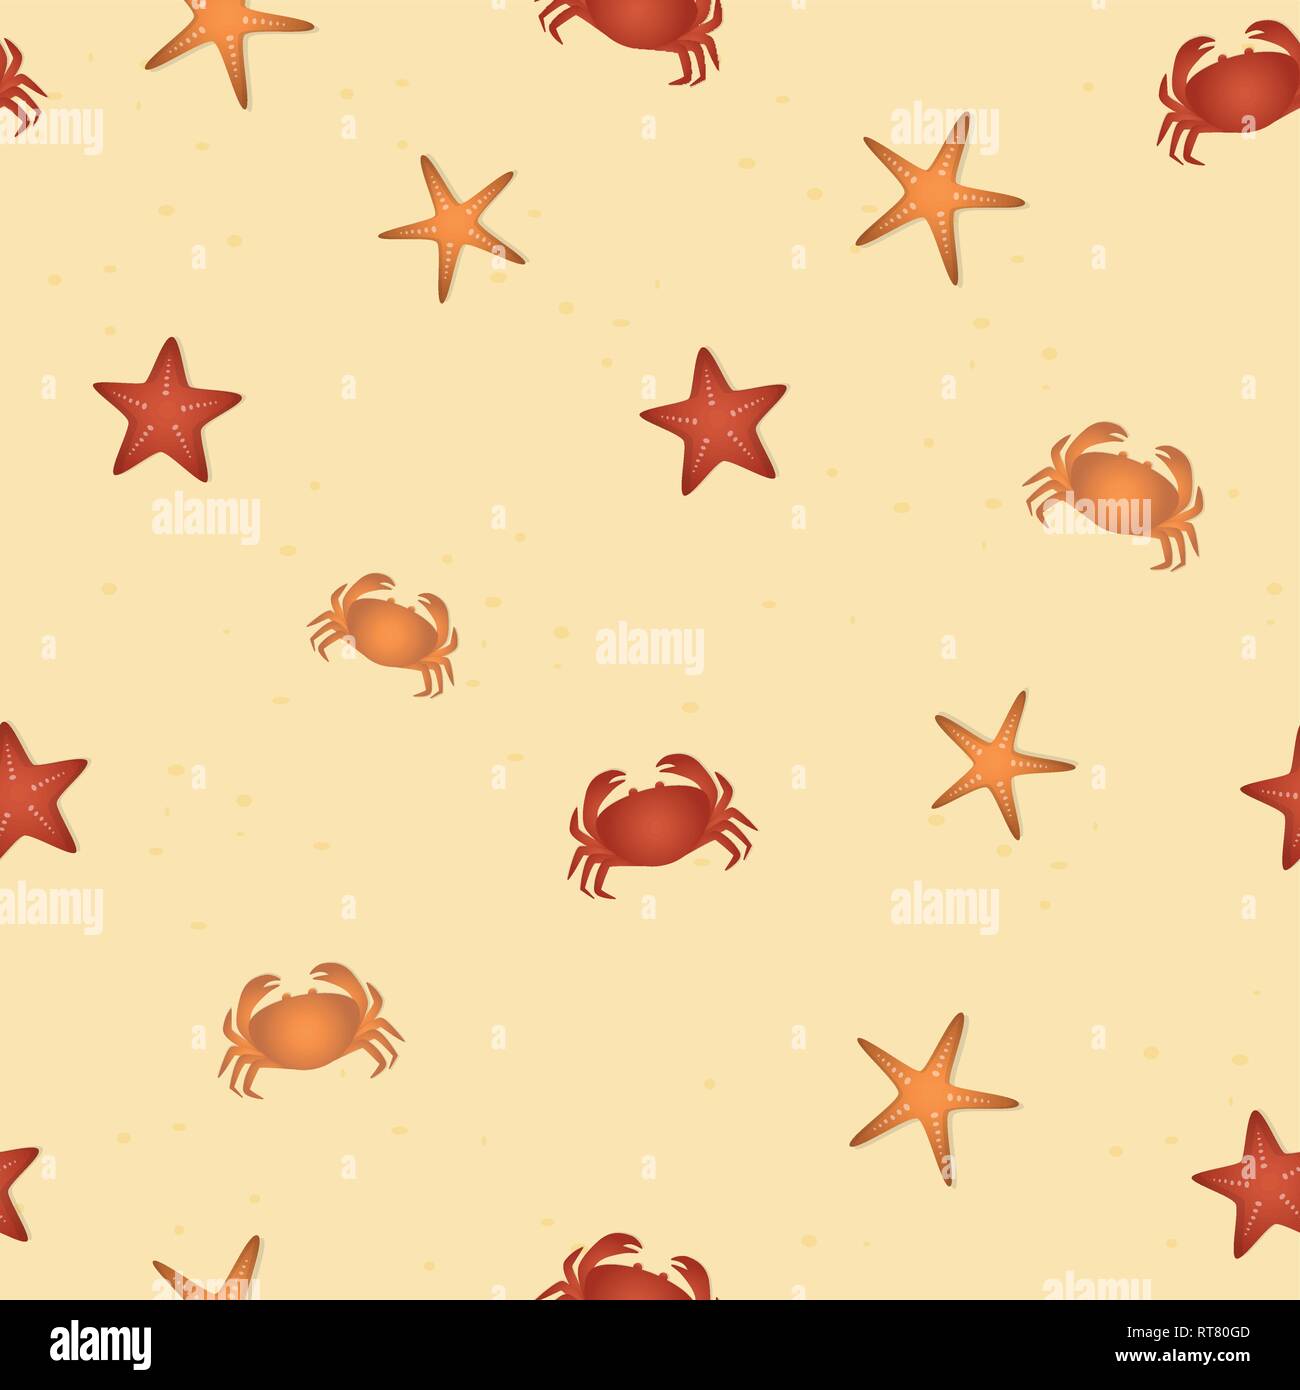 Motif étoile de mer transparente et les crabes sur la plage de l'été illustration vecteur conception SPE10 Illustration de Vecteur